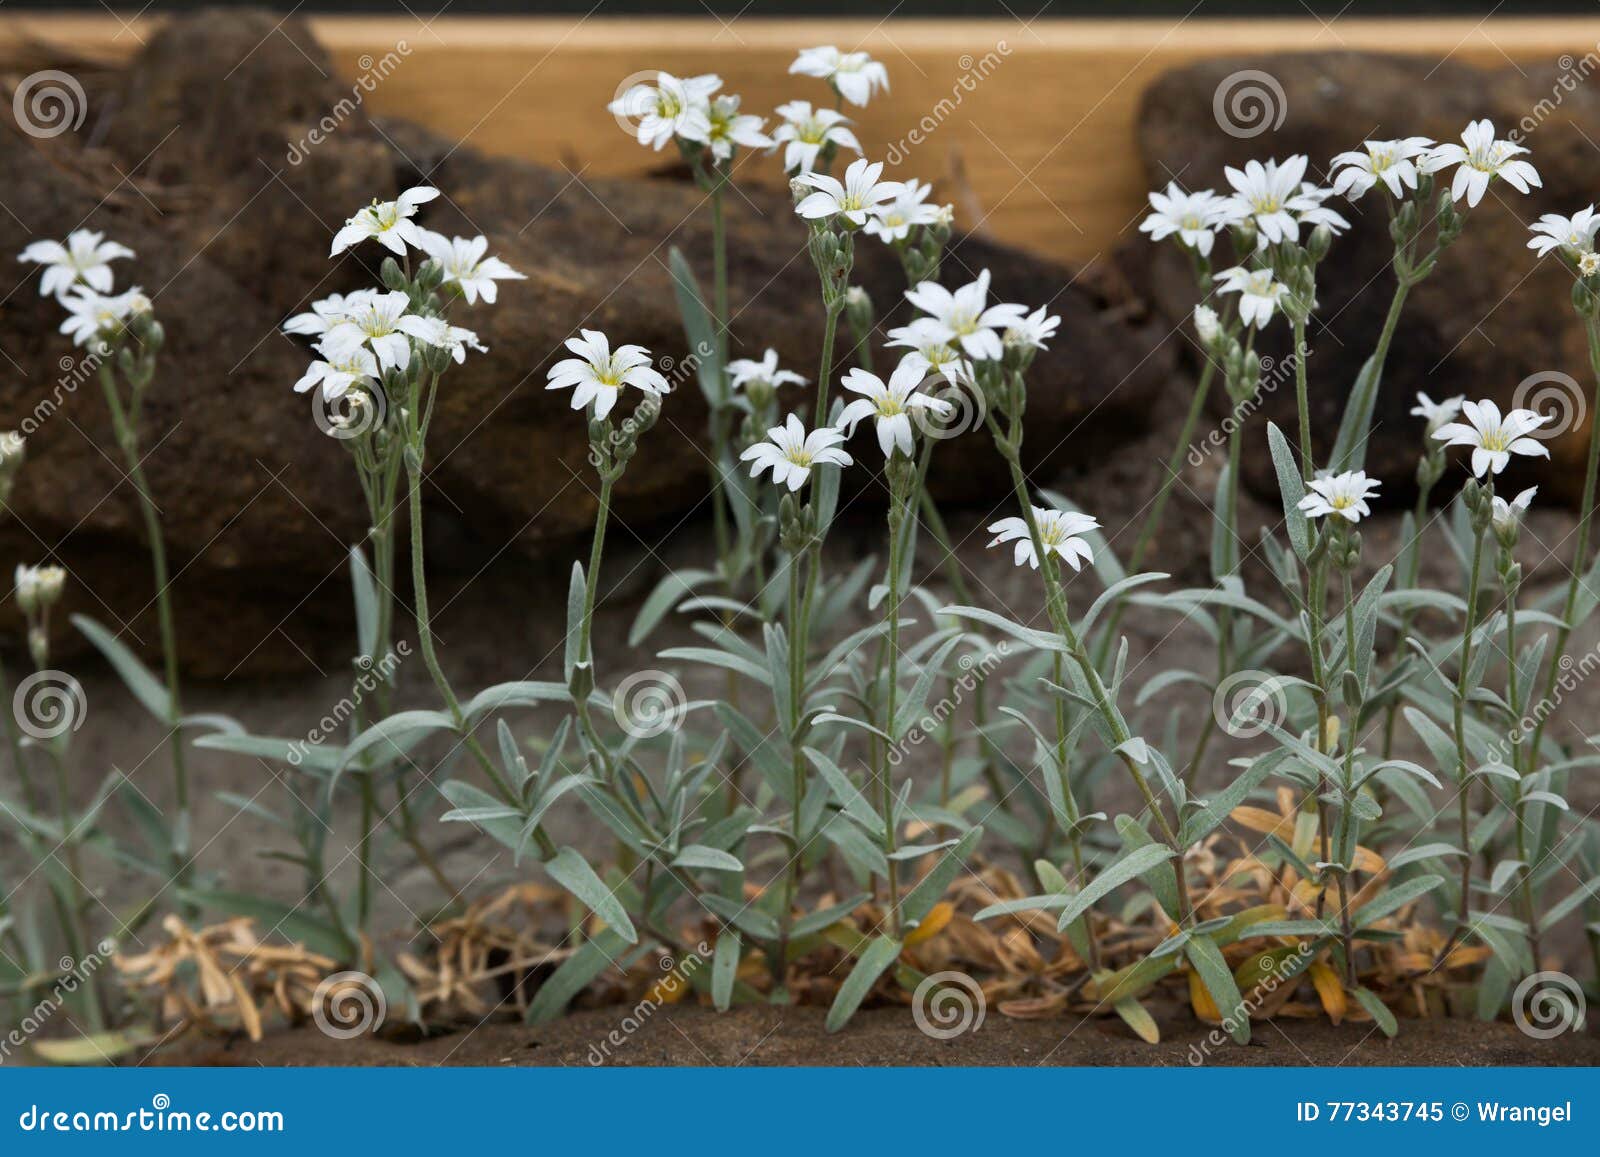 snow-in-summer (cerastium tomentosum).